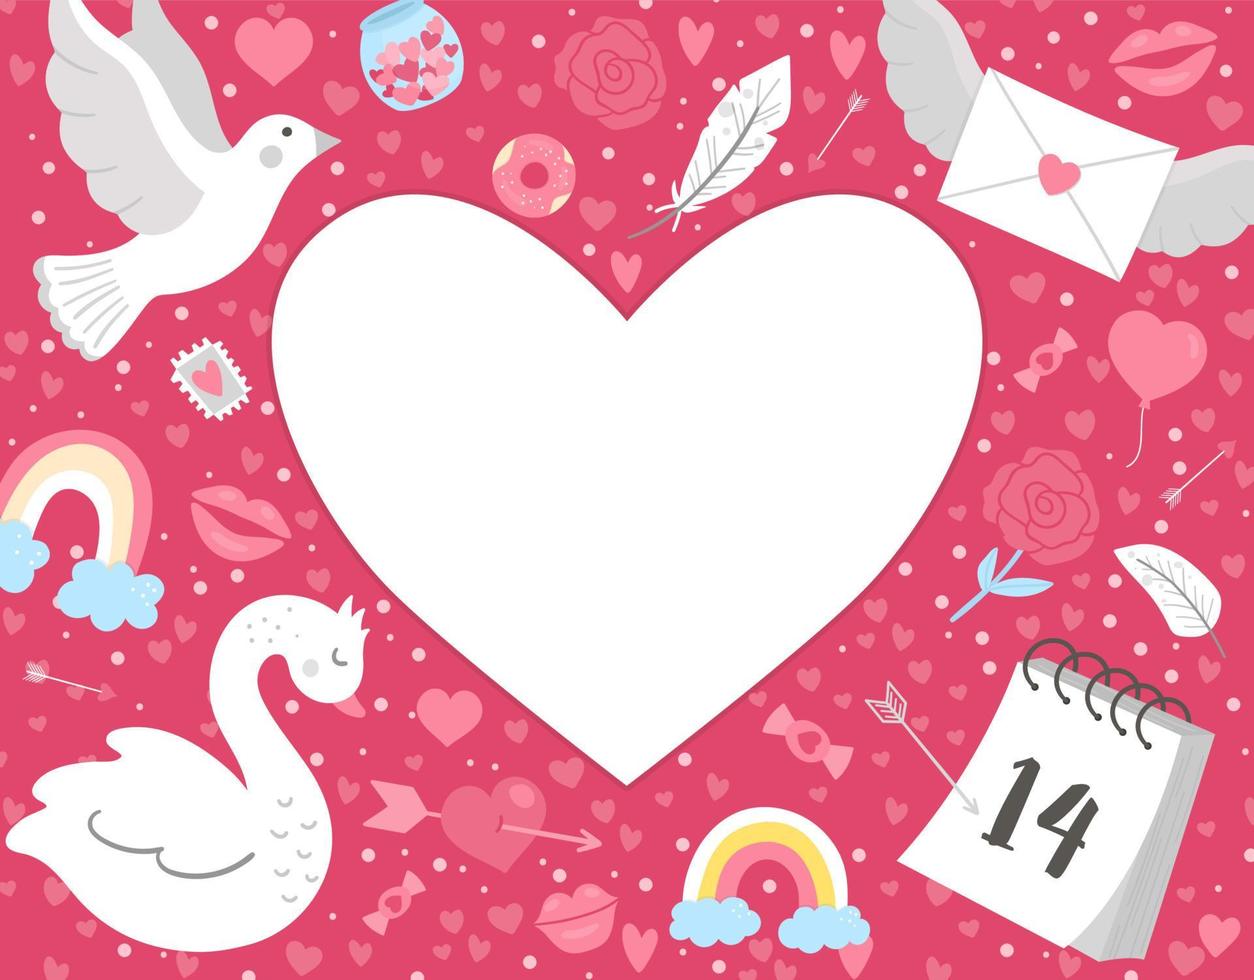 Valentinstag Grußkartenvorlage mit süßer Taube, Schwan, Brief, Kalender. Liebesurlaubsplakat oder -einladung für Kinder mit Platz für Text in Herzform. leuchtend rosa Rahmenillustration vektor